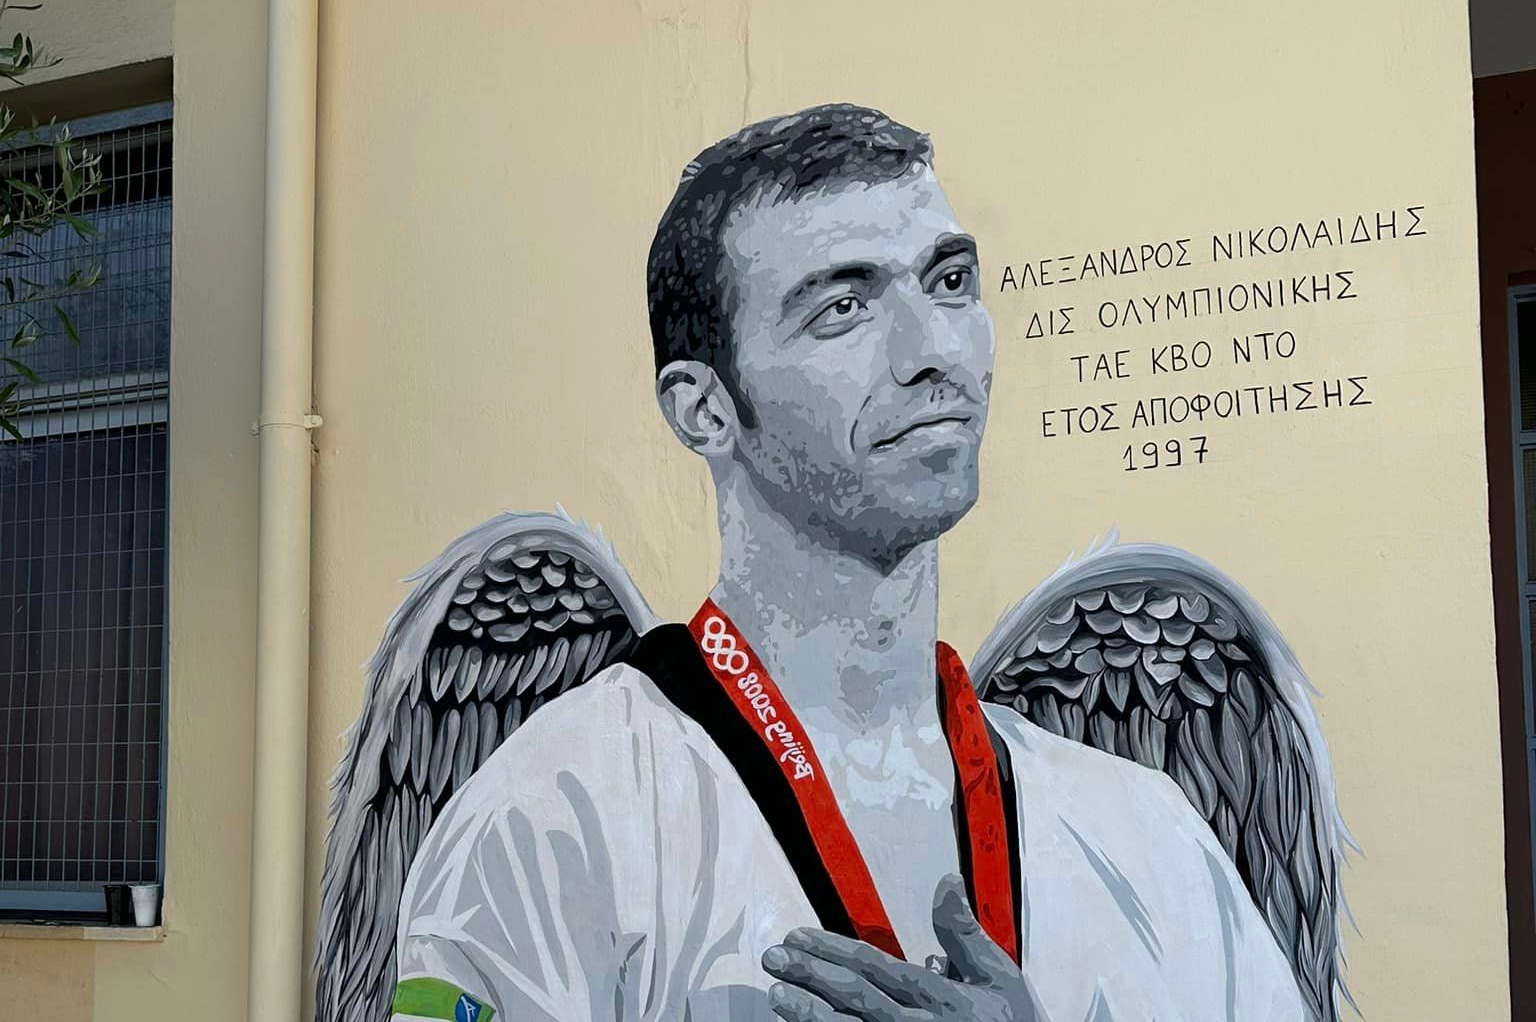 Γκράφιτι στην μνήμη του Αλέξανδρου Νικολαίδη